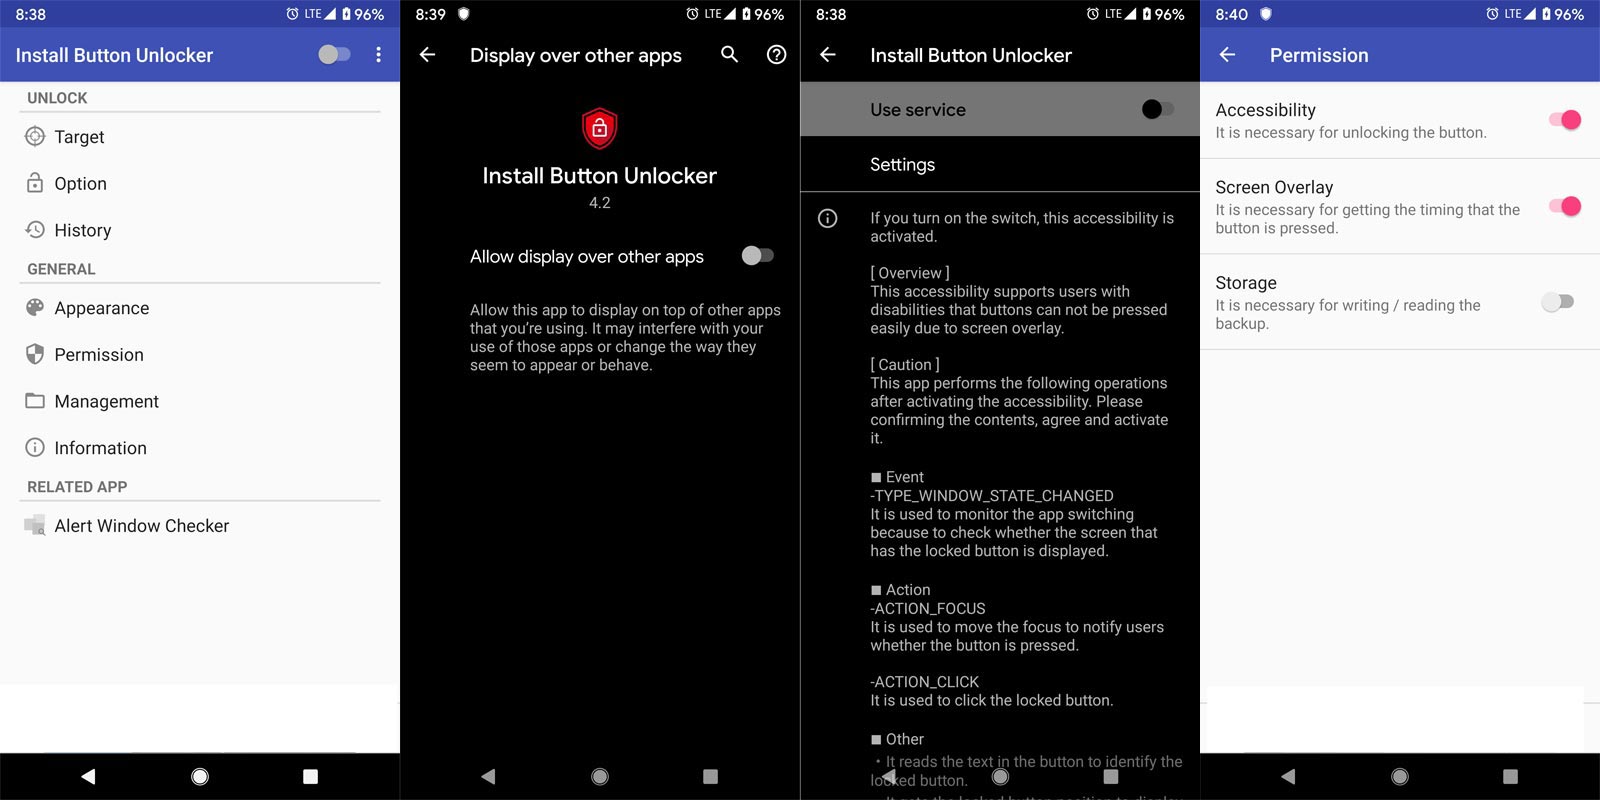 Install Button Unlocker App screenshots